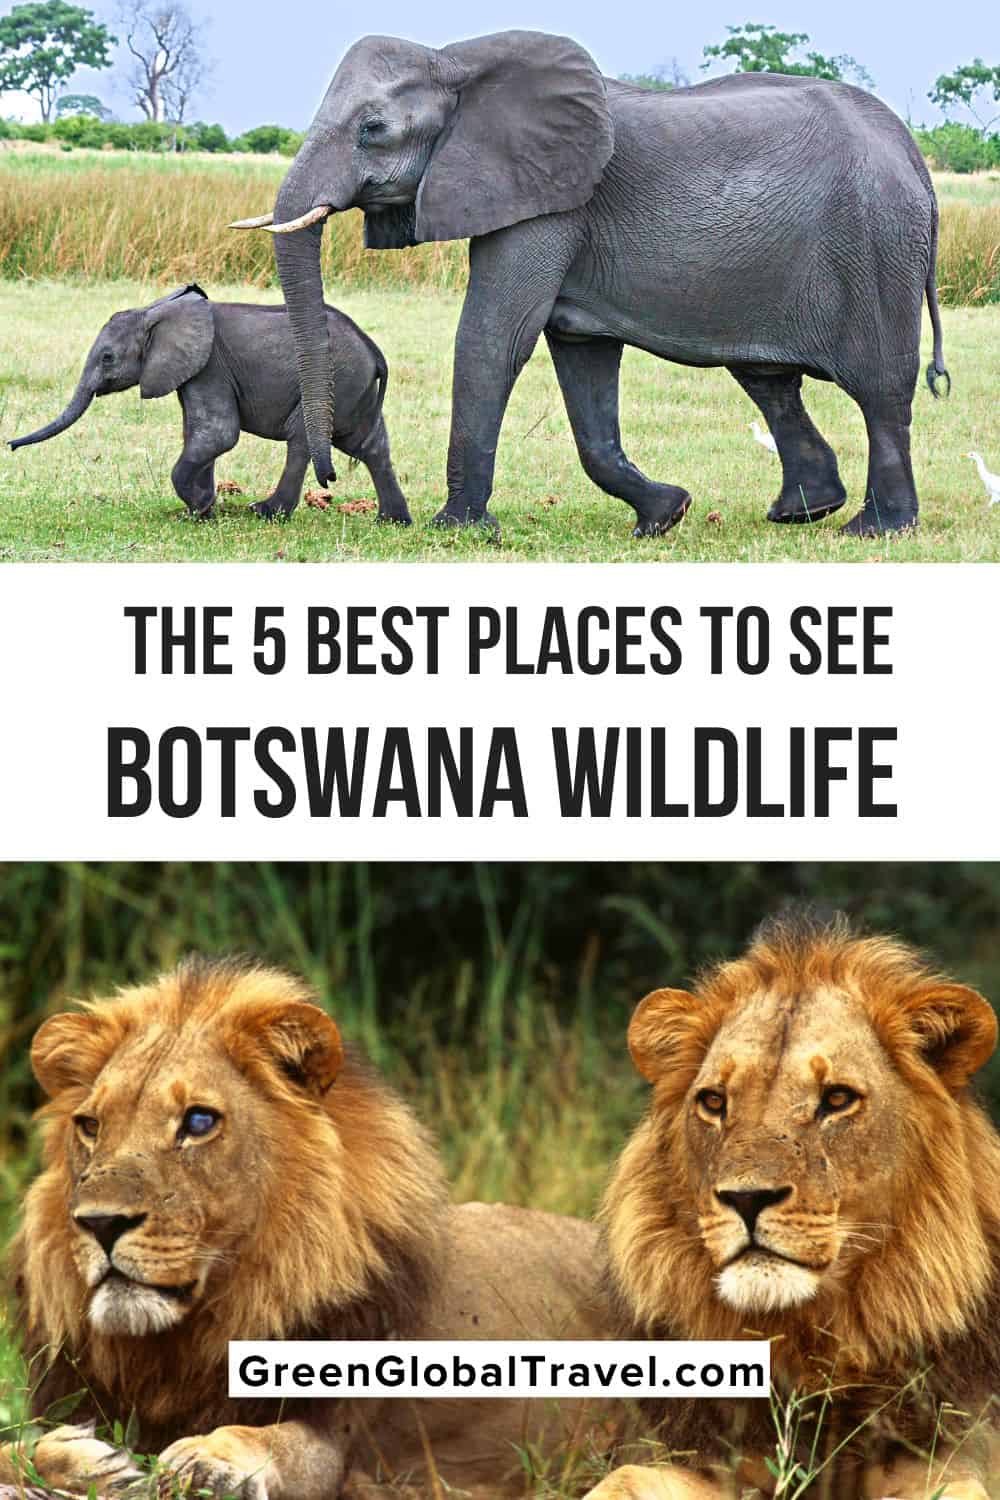 Una mirada a por qué la conservación de la vida silvestre de Botswana ha sido exitosa, y las mejores reservas de caza y parques nacionales de Botswana para visitar.  |  animales botsuana |  animales en botsuana |  animales de botsuana |  fauna en botswana fauna en botswana |  atracciones de botsuana |  mejores safaris en botswana |  animales kalahari |  safari africano en botsuana |  safari de vida salvaje en botswana |  safari de vida silvestre en botswana | safaris de vida silvestre en botswana